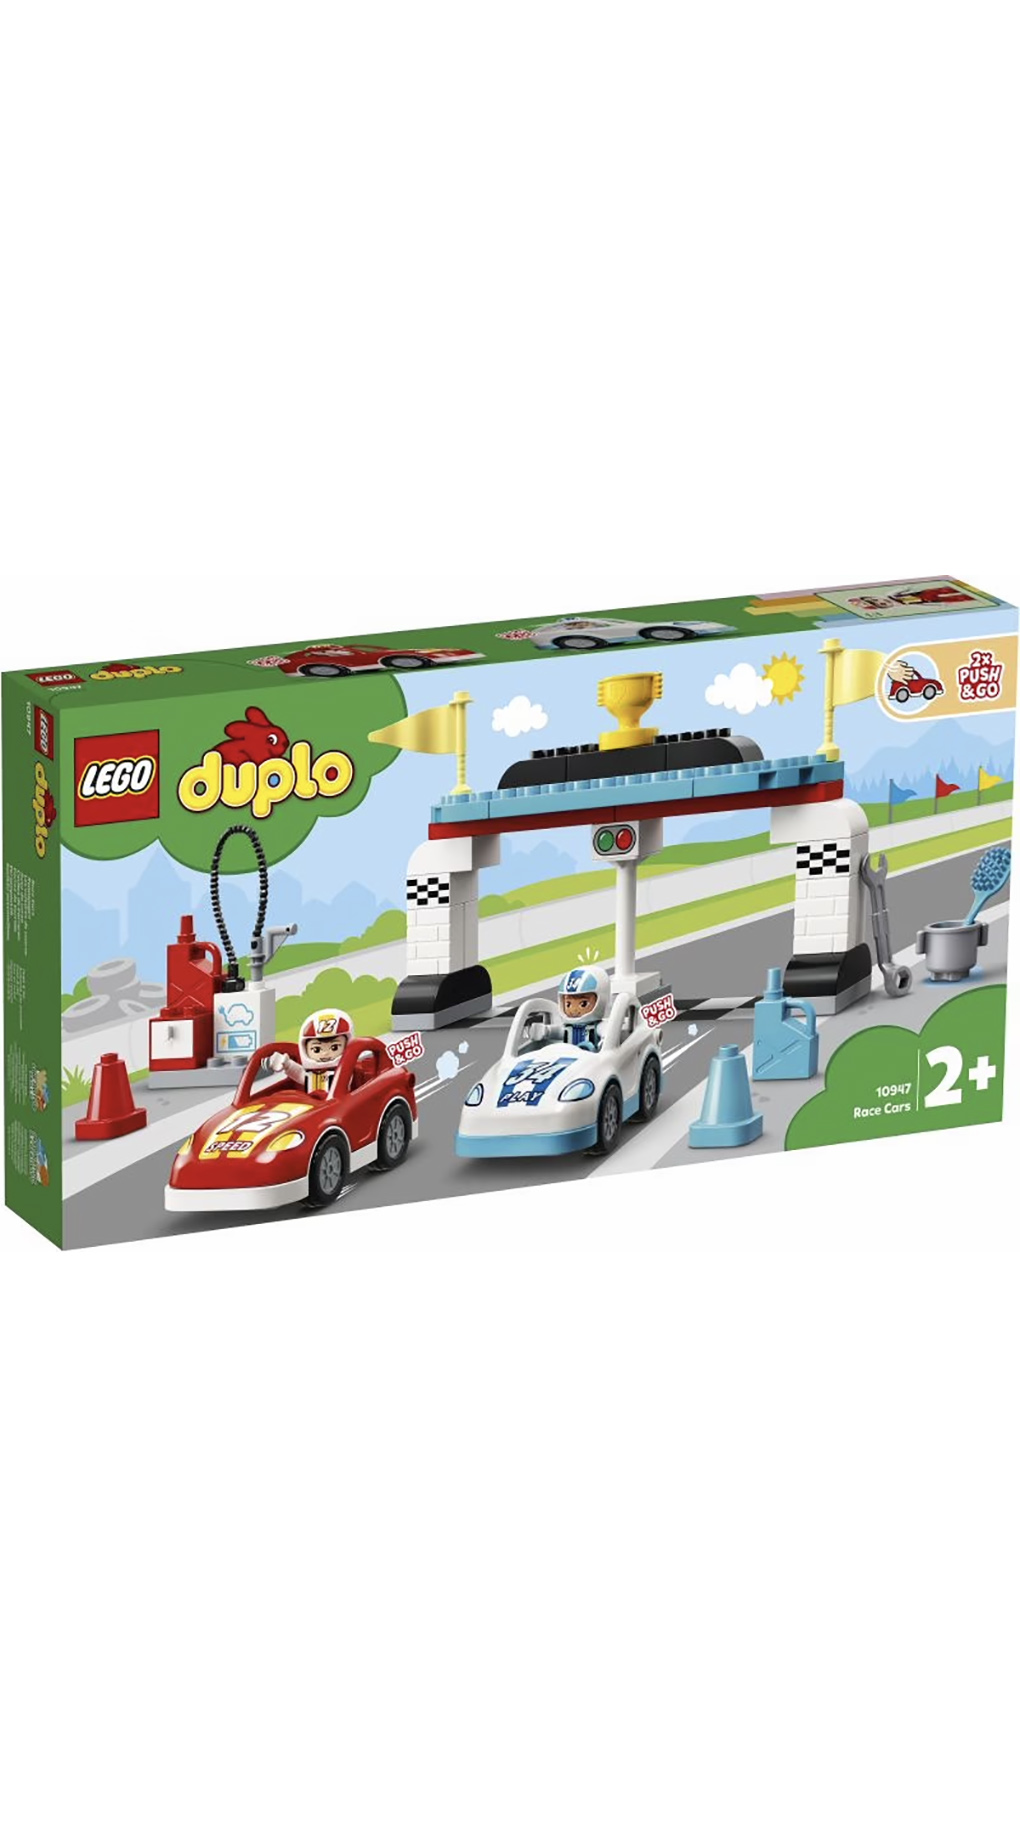 Lego duplo town αγωνιστικά αυτοκίνητα 10947